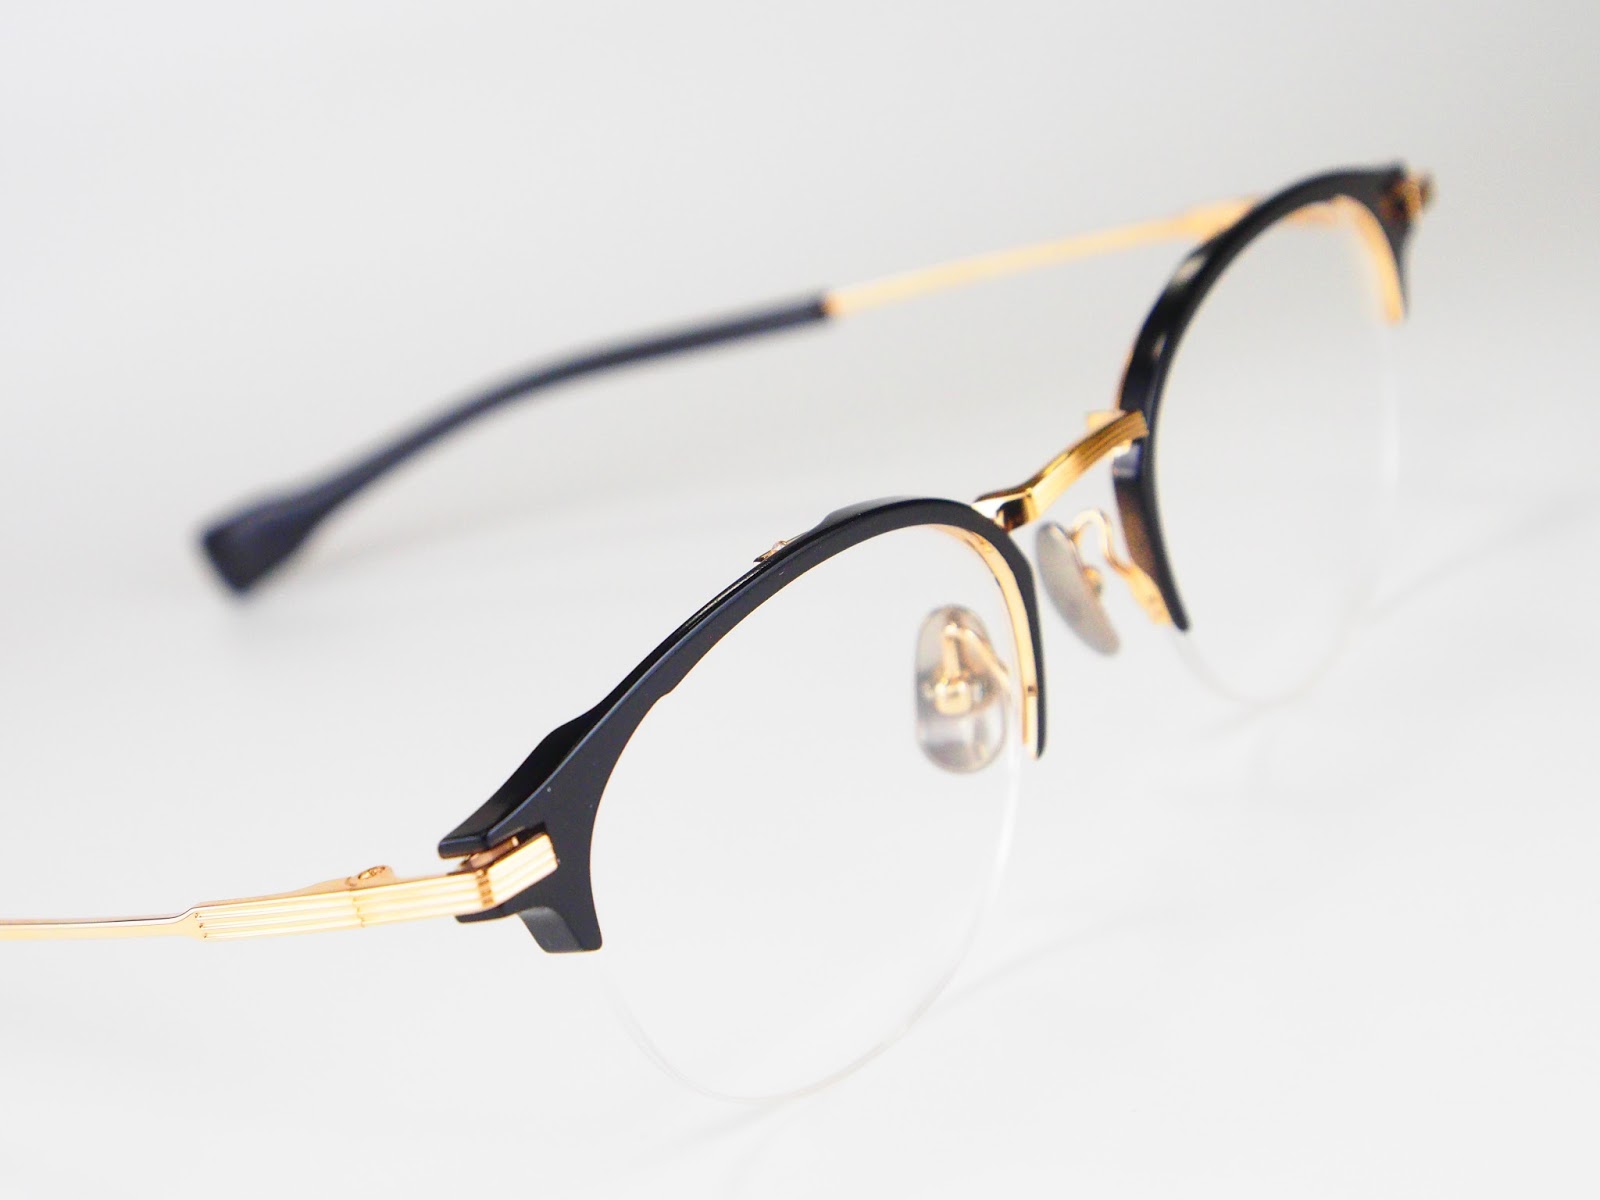 逆Rパーツを内蔵した 999.9（フォーナインズ）「S-351T」 | 愛知県岡崎市で1882年創業の眼鏡専門店 メガネの吉川屋ブログ